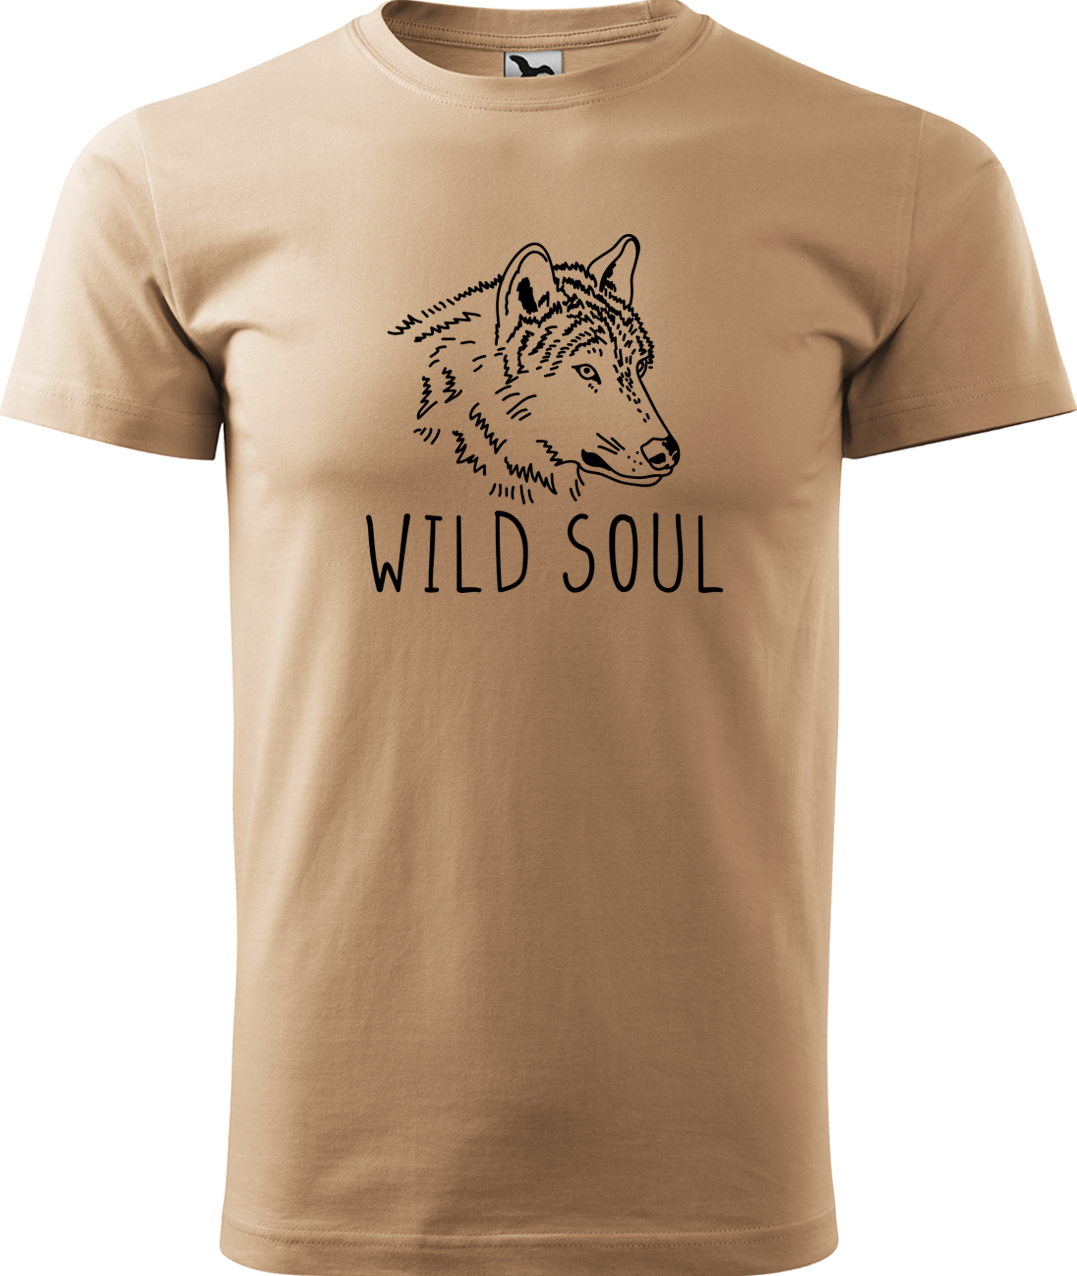 Pánské tričko s vlkem - Wild soul Velikost: XL, Barva: Písková (08), Střih: pánský